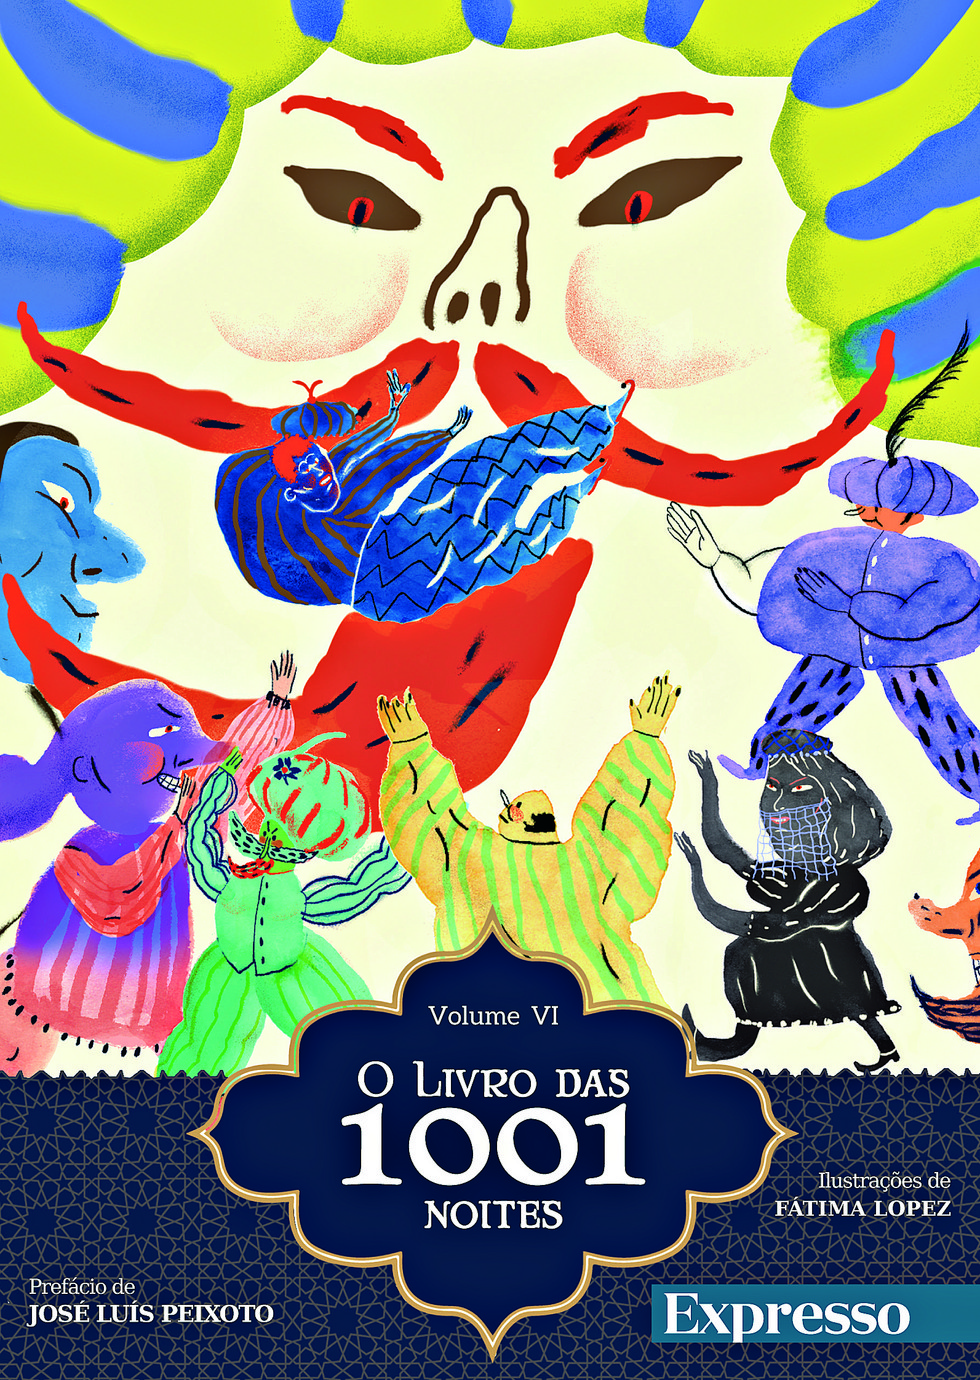 VIRTUAL ILLUSION: As 1001 histórias